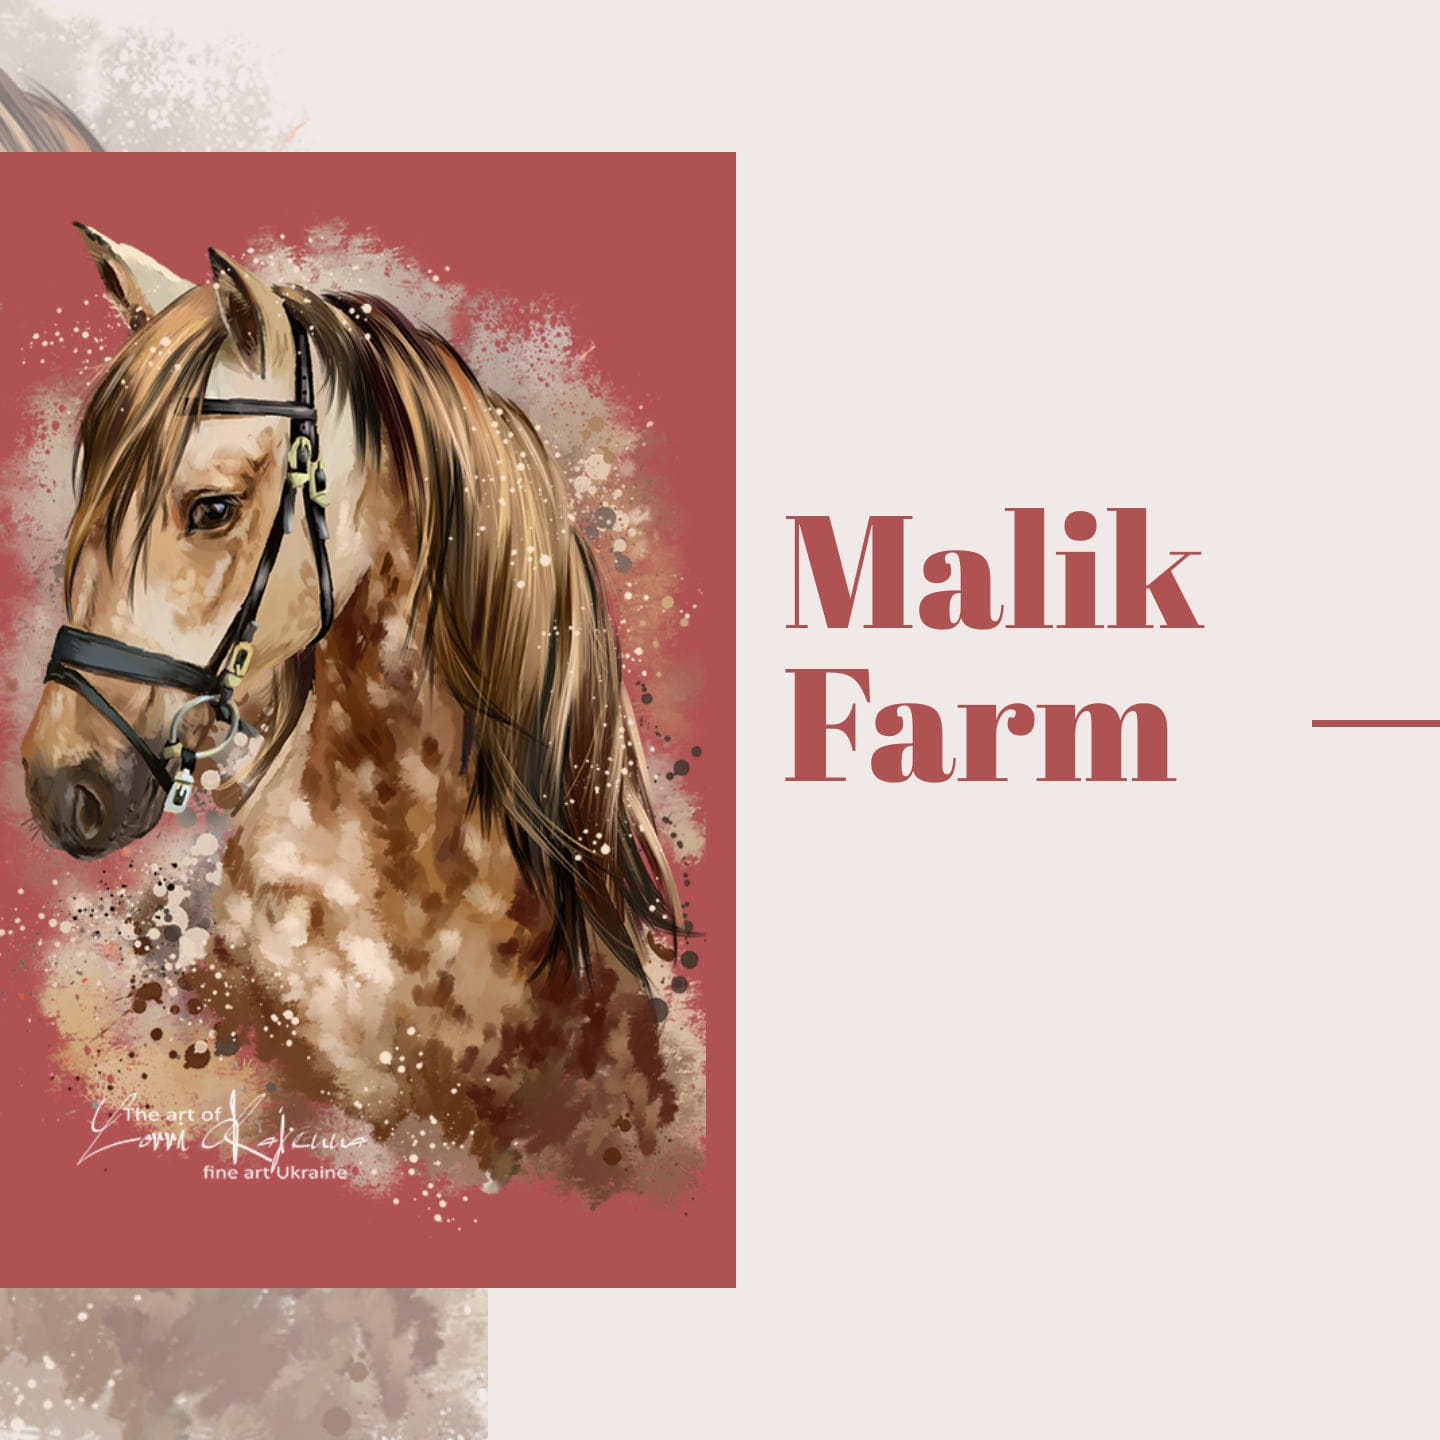 Malik Farm,s